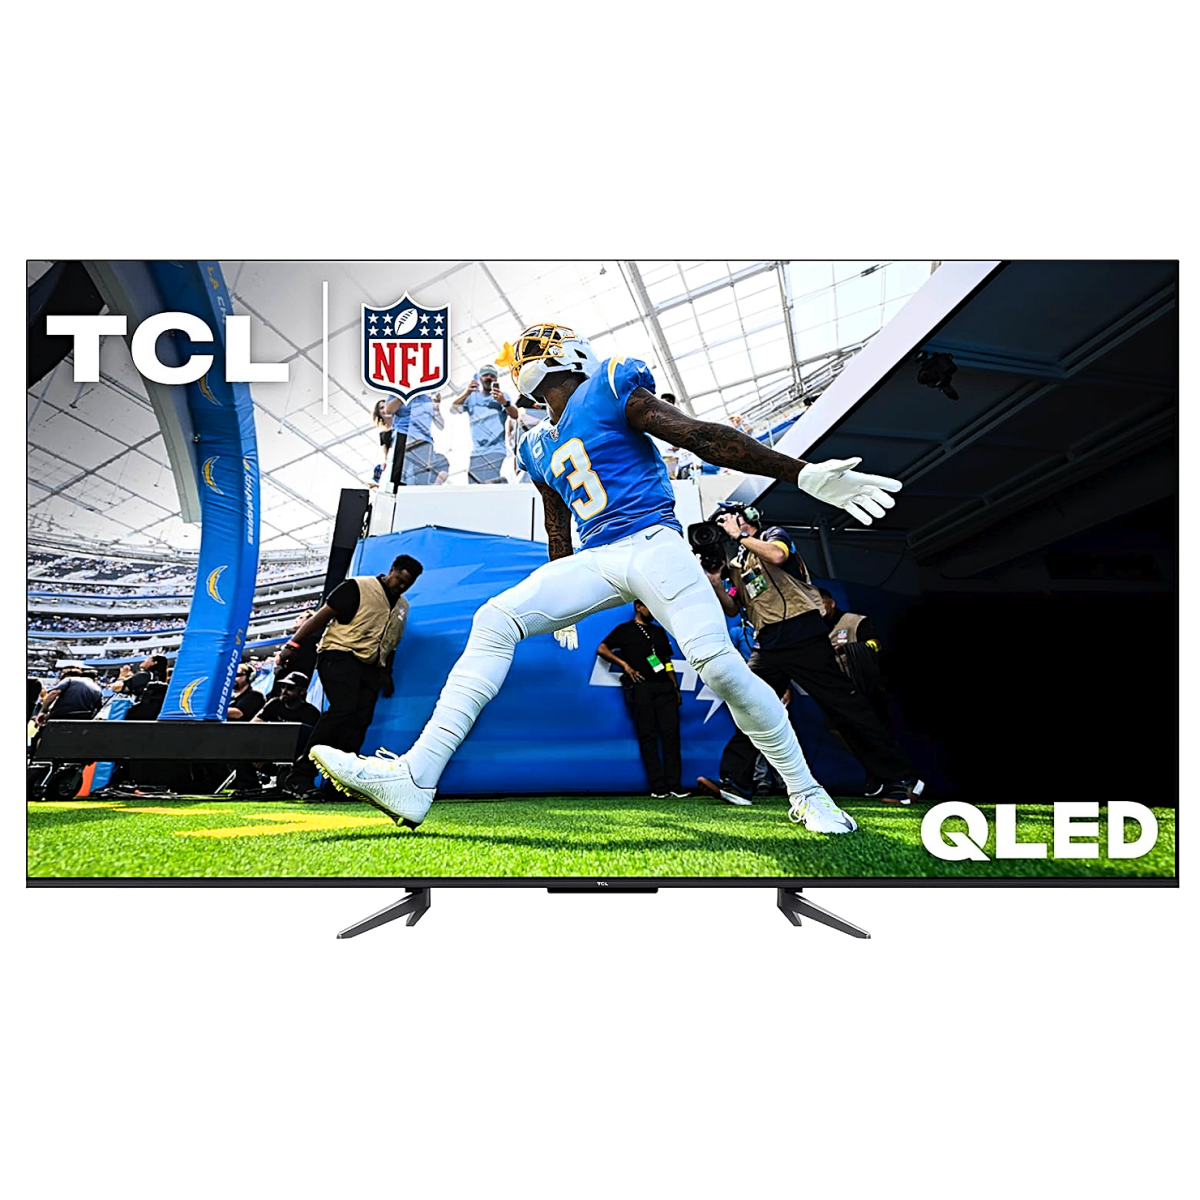 A TCL Q650G 4K QLED displaying NFL football